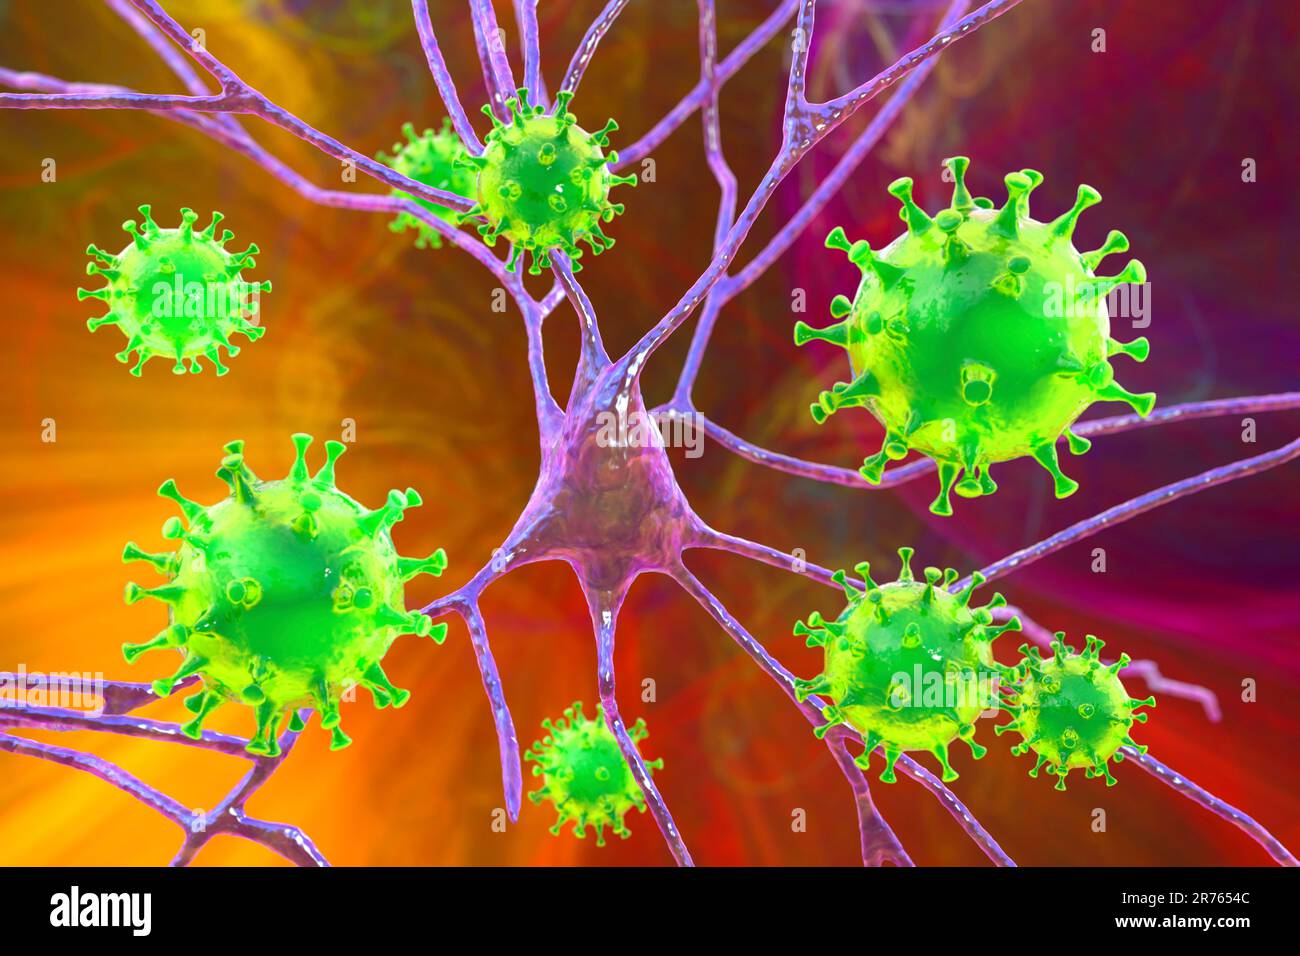 Virale Enzephalitis, konzeptionelle Illustration. Viren infizieren Nervenzellen. Stockfoto